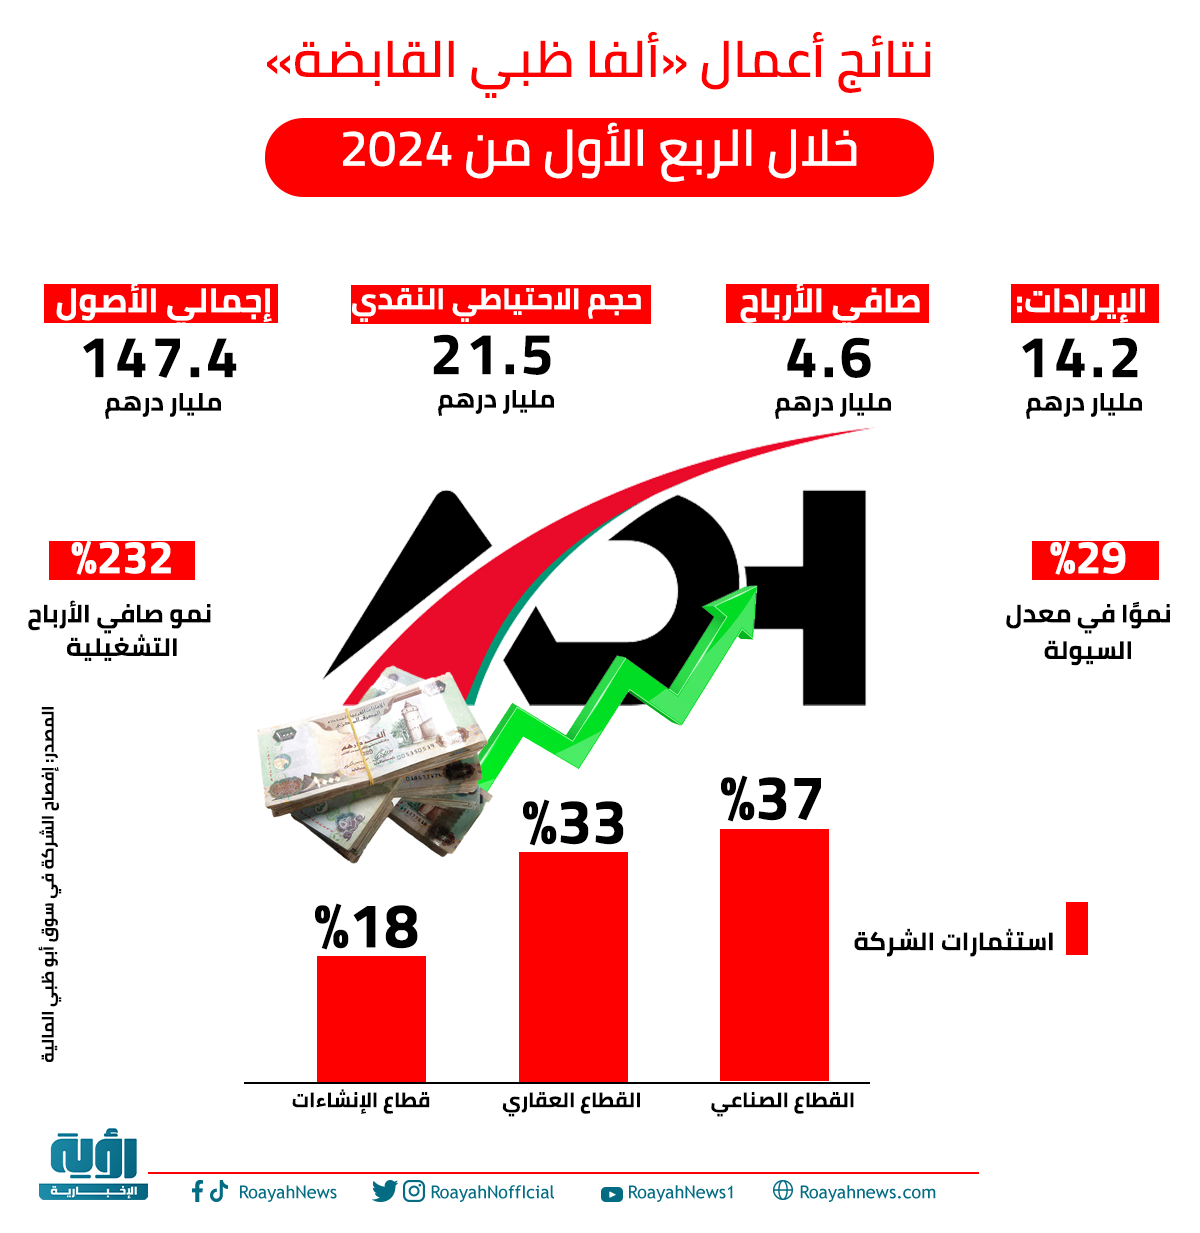 نتائج أعمال ألفا ظبي القابضة خلال الربع الأول من 2024 1